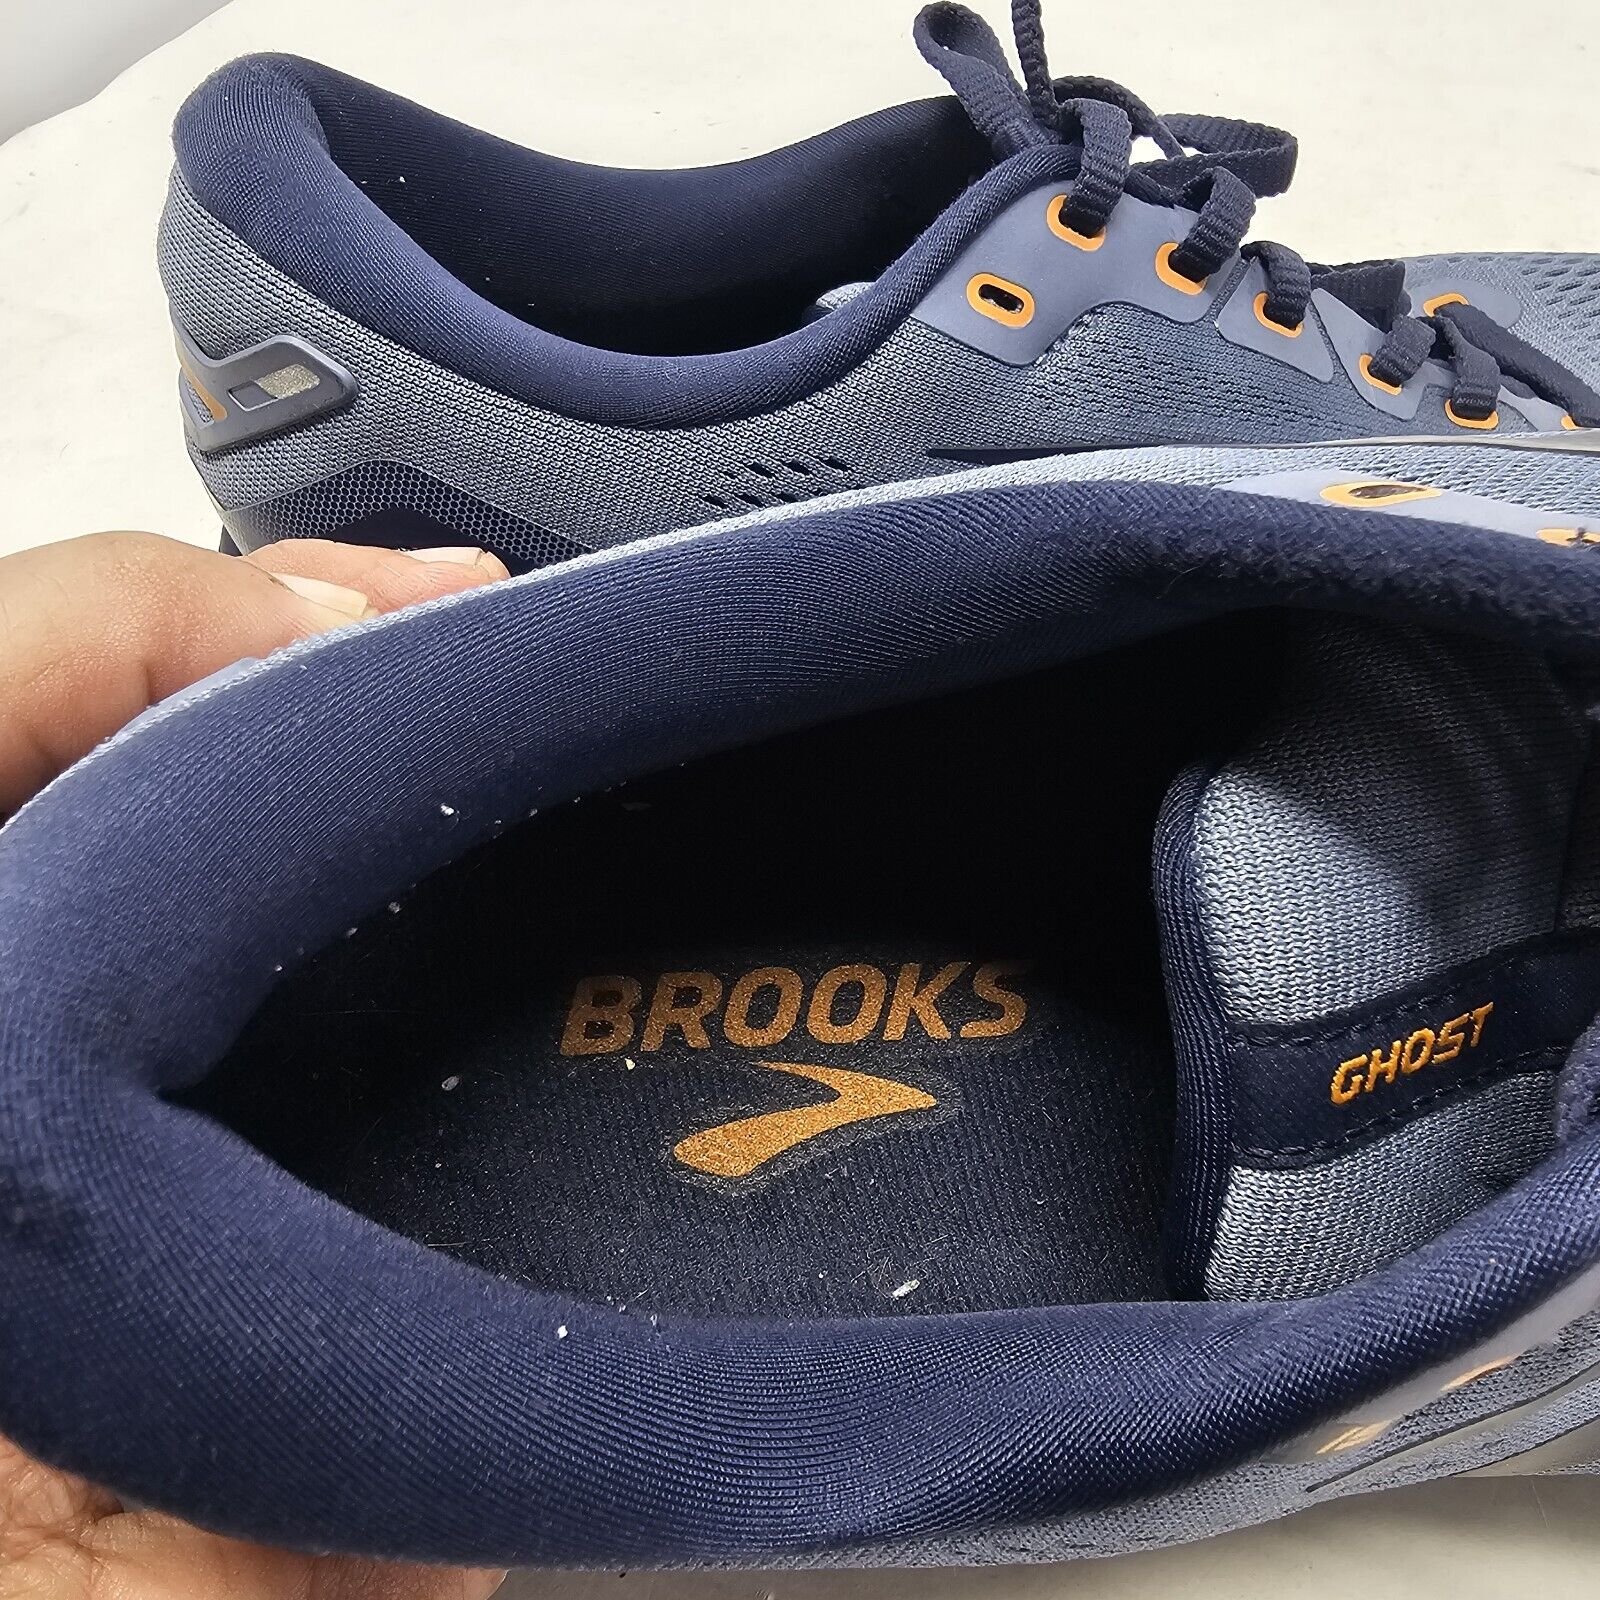 Brooks Ghost 15 Flintstone Peacoat Oak Navy Blue Running Shoes Men's Size 10.5